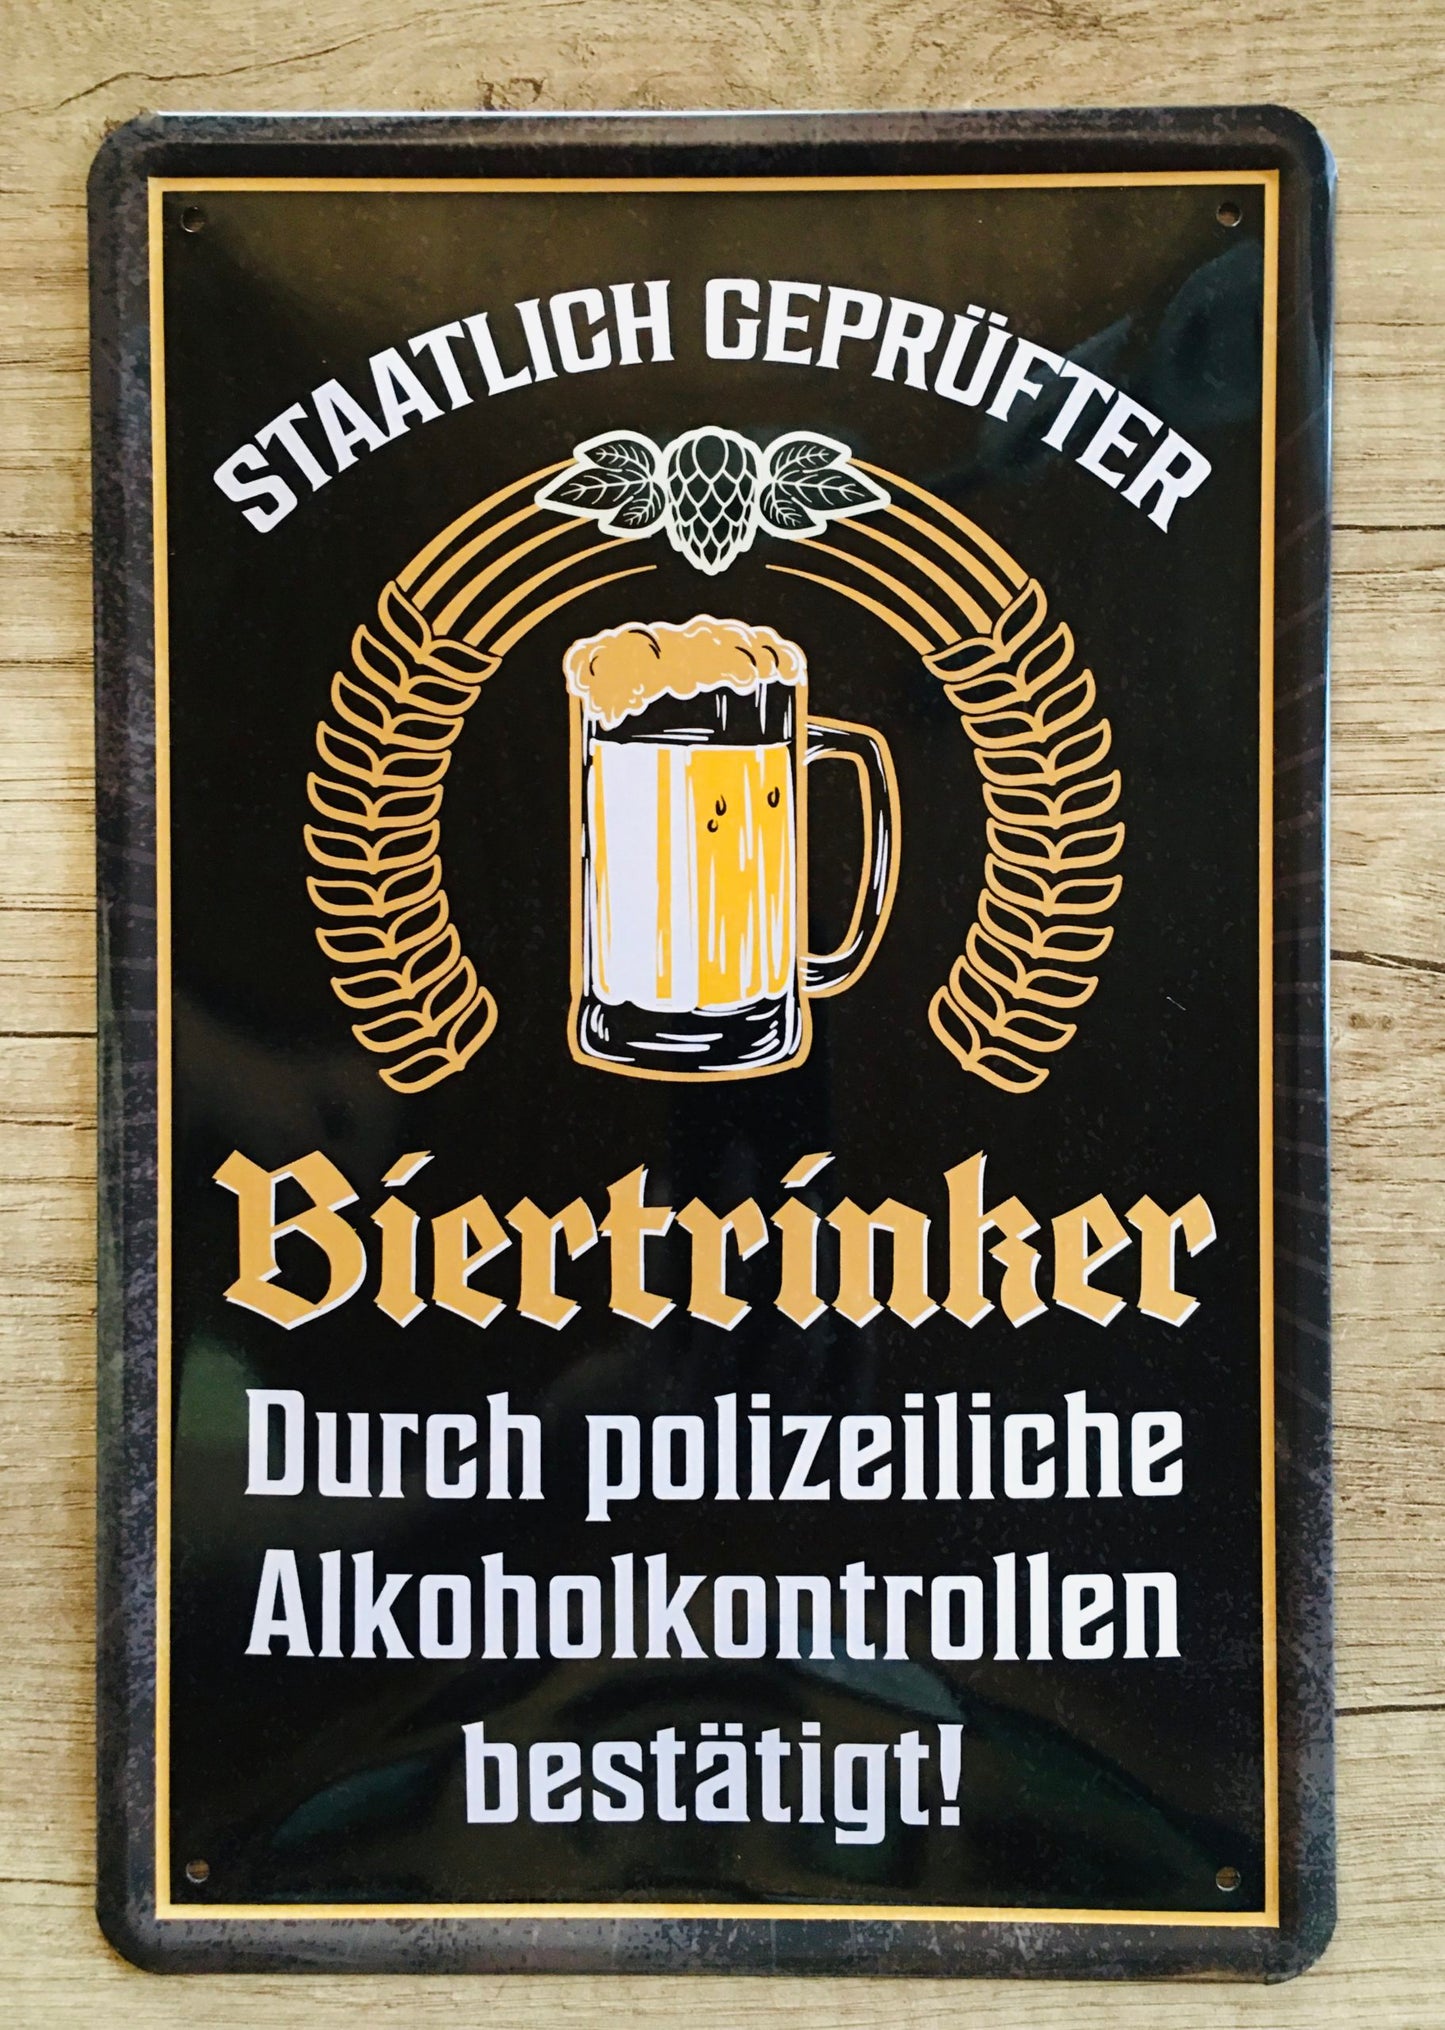 Blechschild "Staatlicher geprüfter Biertrinker"